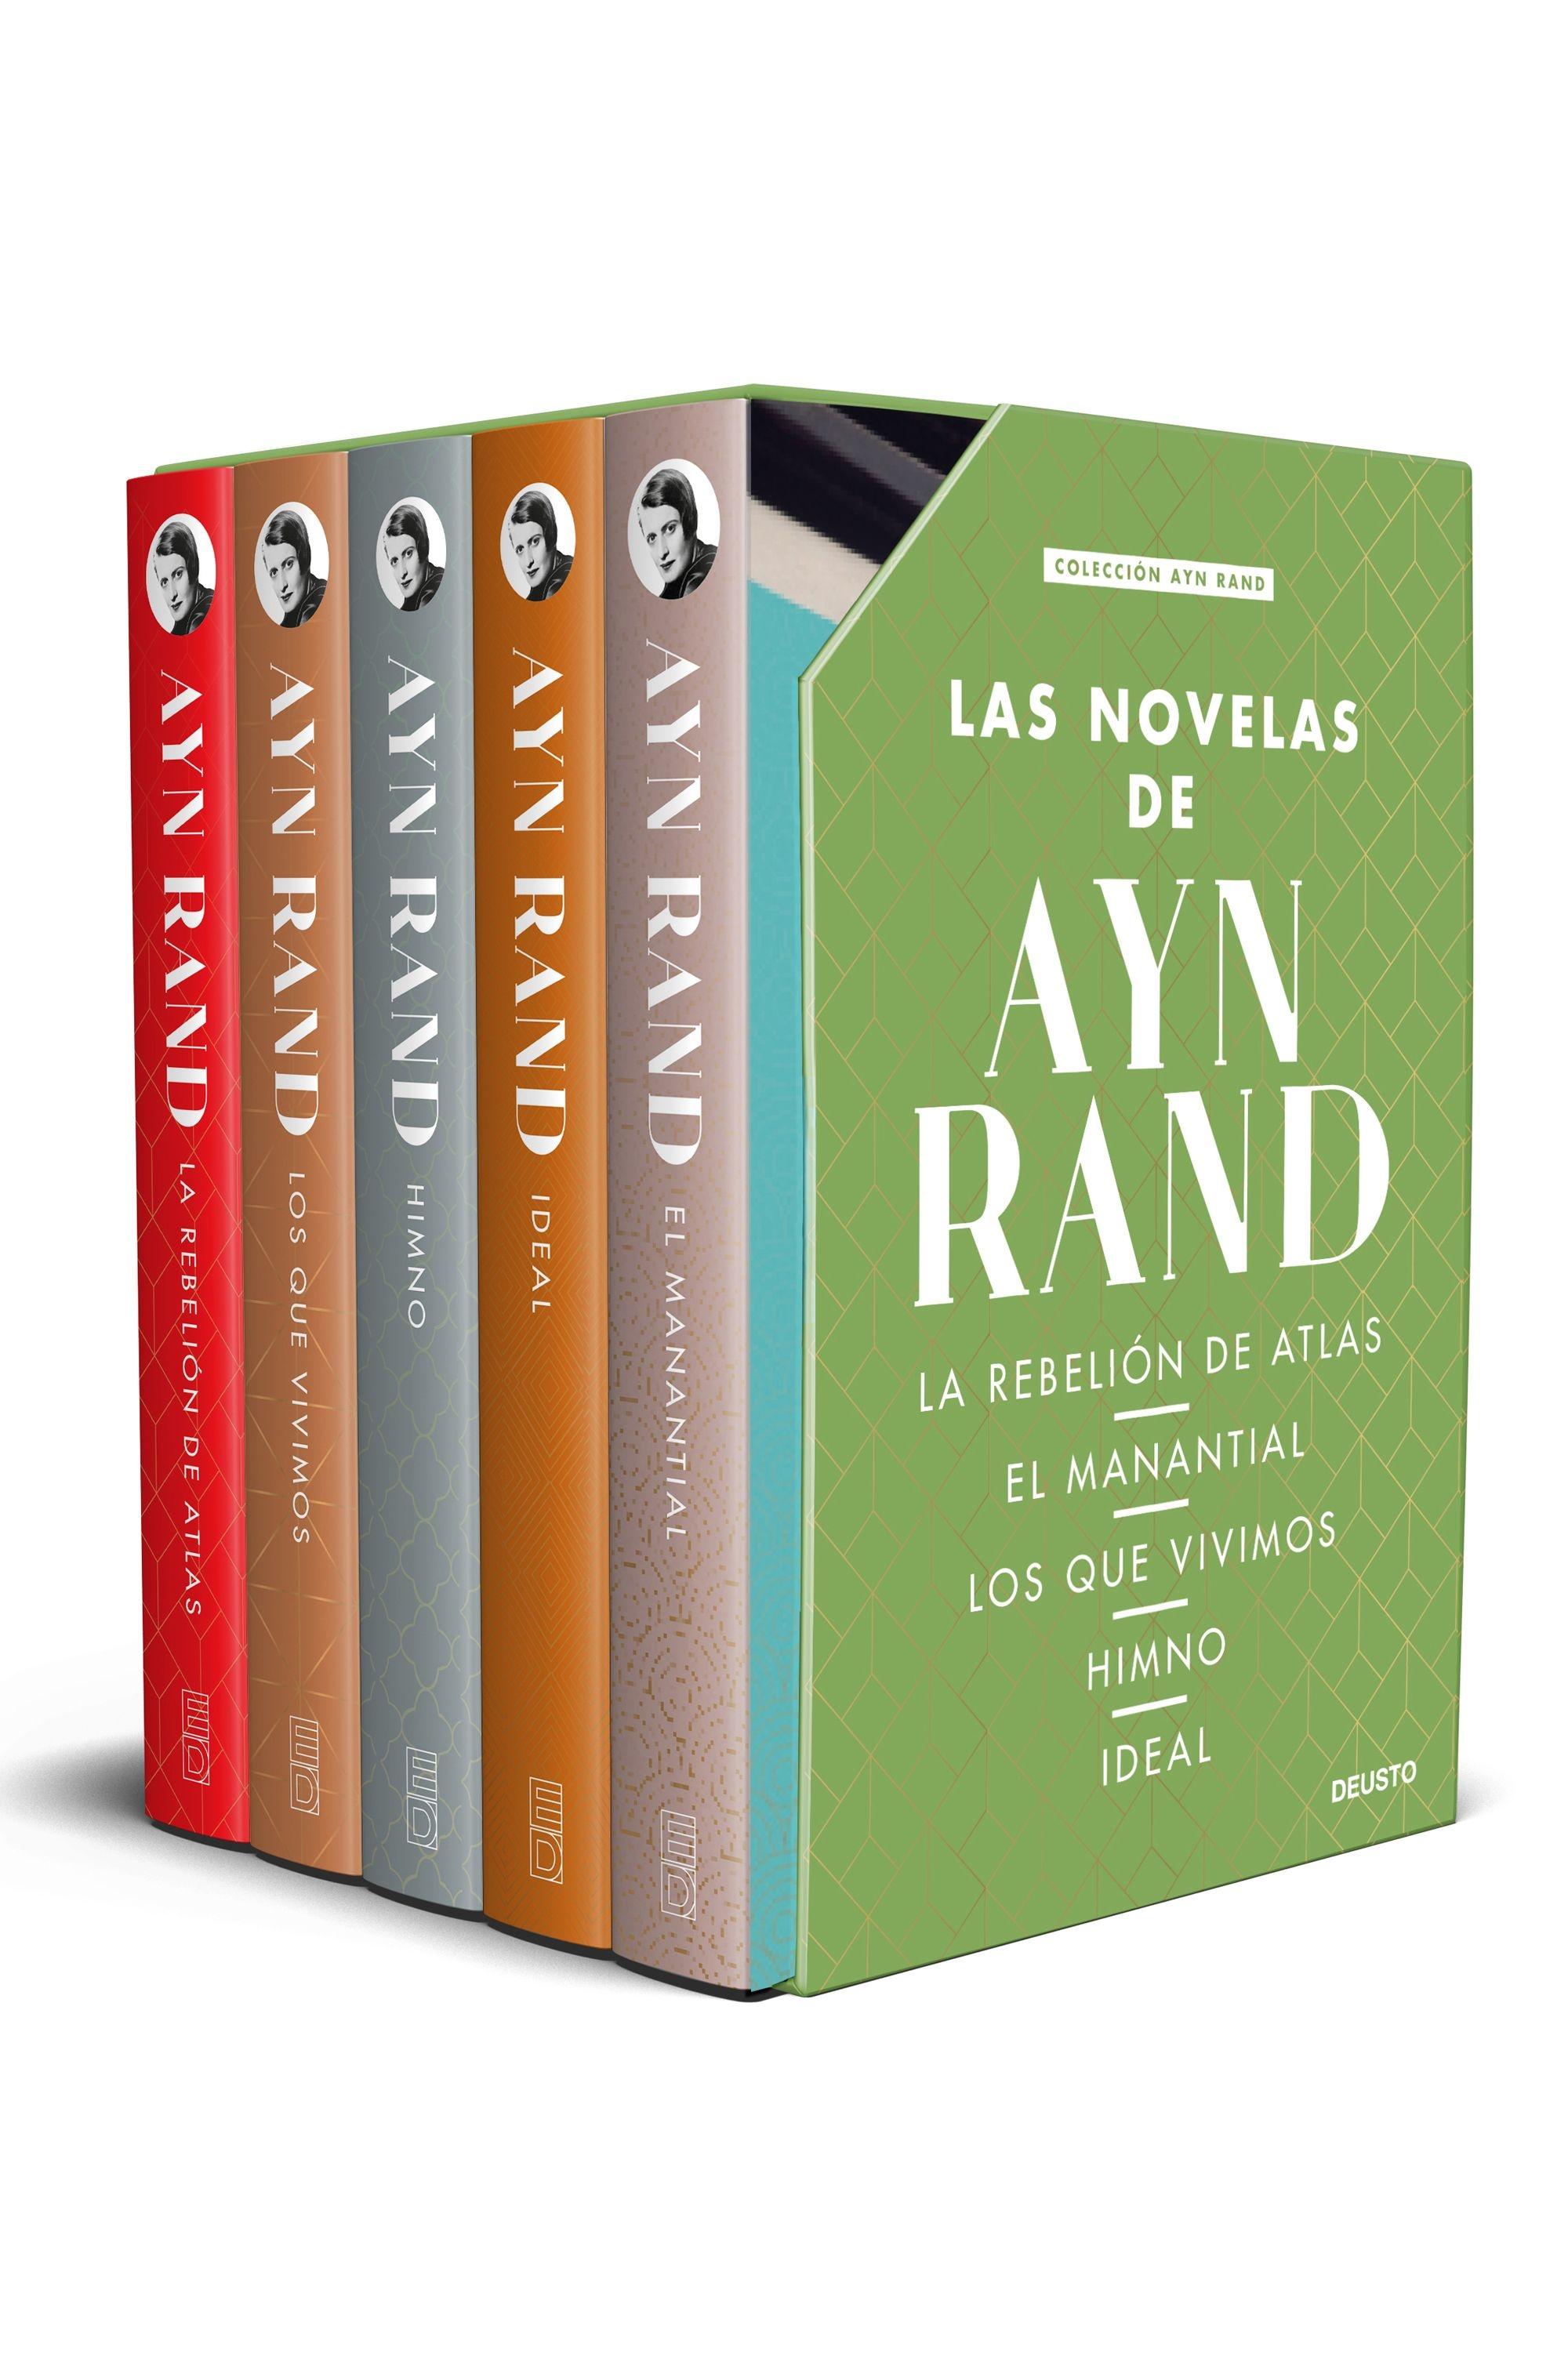 Estuche Ayn Rand "5 Volúmenes (La rebelión de atlas. El manatial. Los que vivimos. Himno. Ideal"